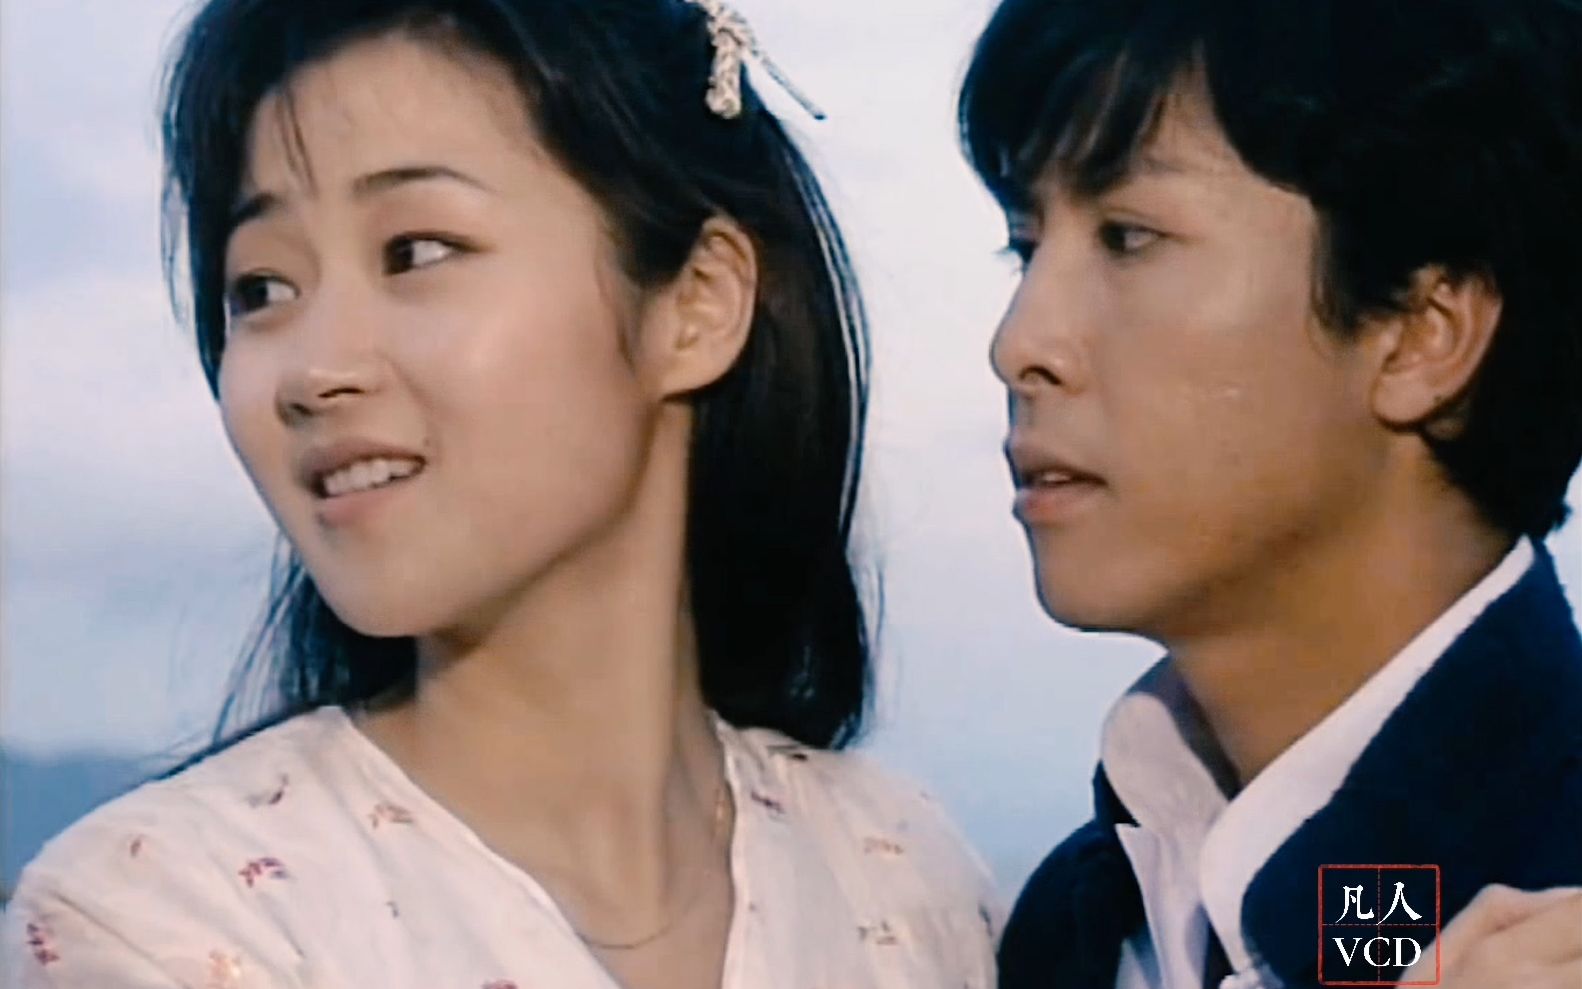 1995《精武门》万绮雯饰演武田由美，和甄子丹的